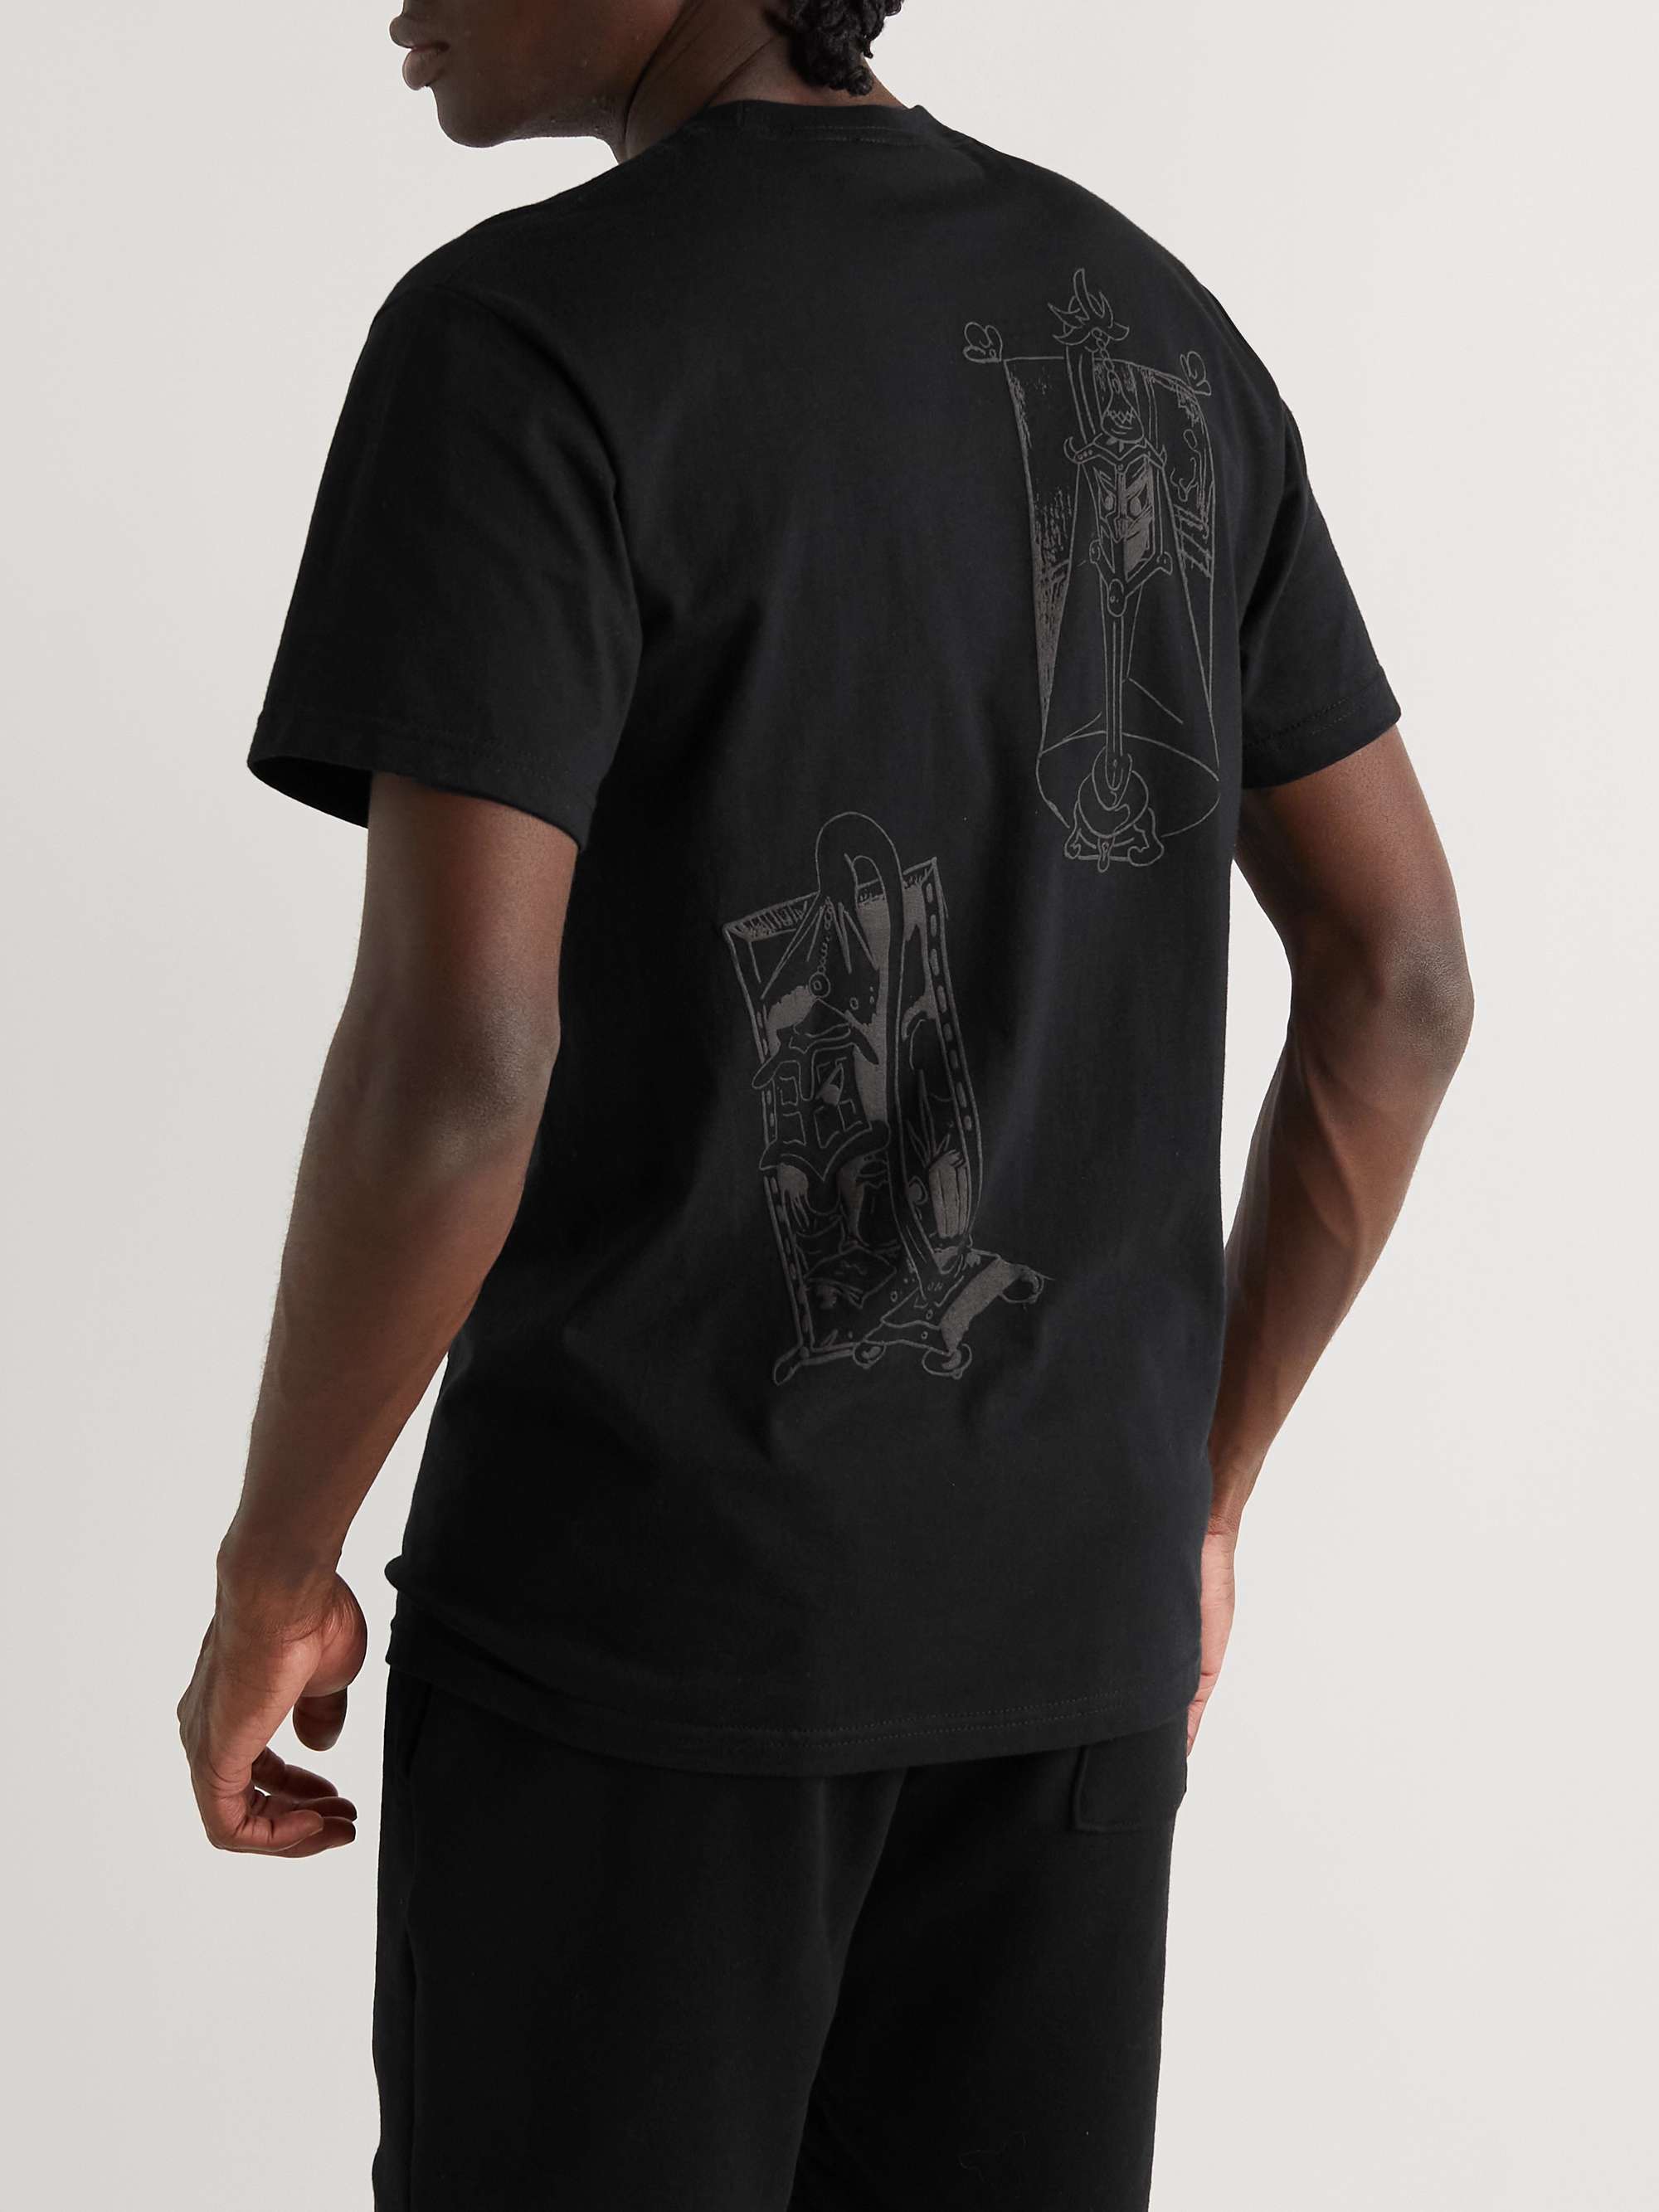 BETTER GIFT SHOP + Chris Lux Logo-Print Cotton Jersey T-shirt